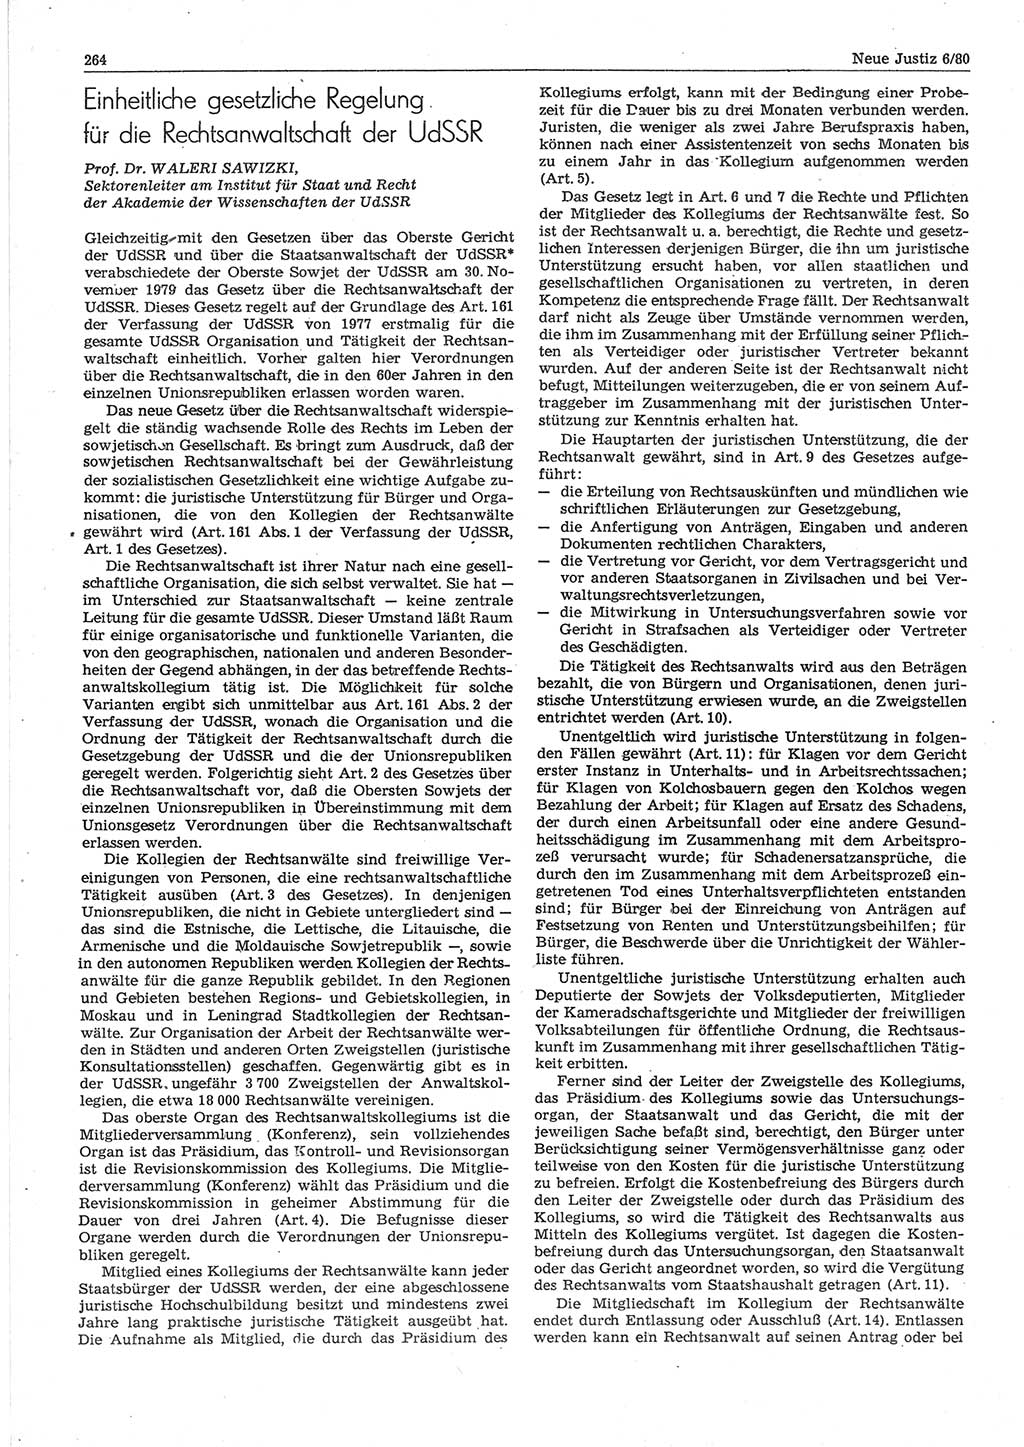 Neue Justiz (NJ), Zeitschrift für sozialistisches Recht und Gesetzlichkeit [Deutsche Demokratische Republik (DDR)], 34. Jahrgang 1980, Seite 264 (NJ DDR 1980, S. 264)